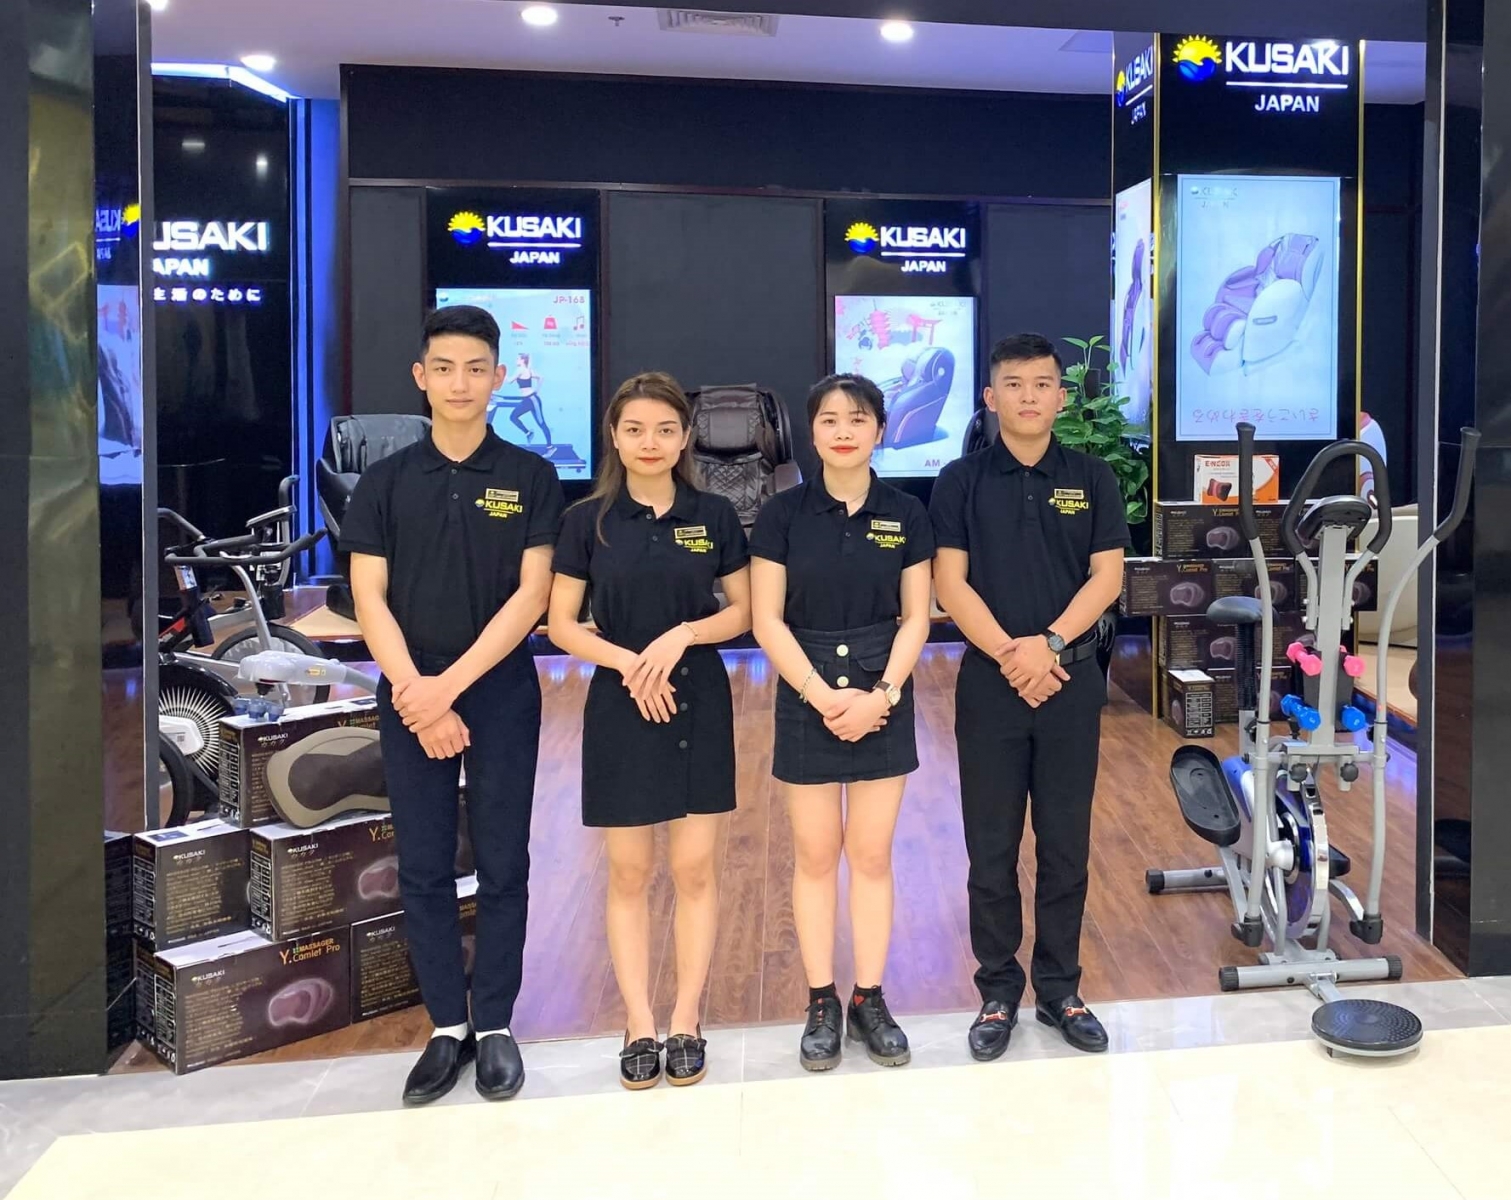 Okusaki -  Địa chỉ bán máy chạy bộ uy tín bậc nhất tại Hà Nội